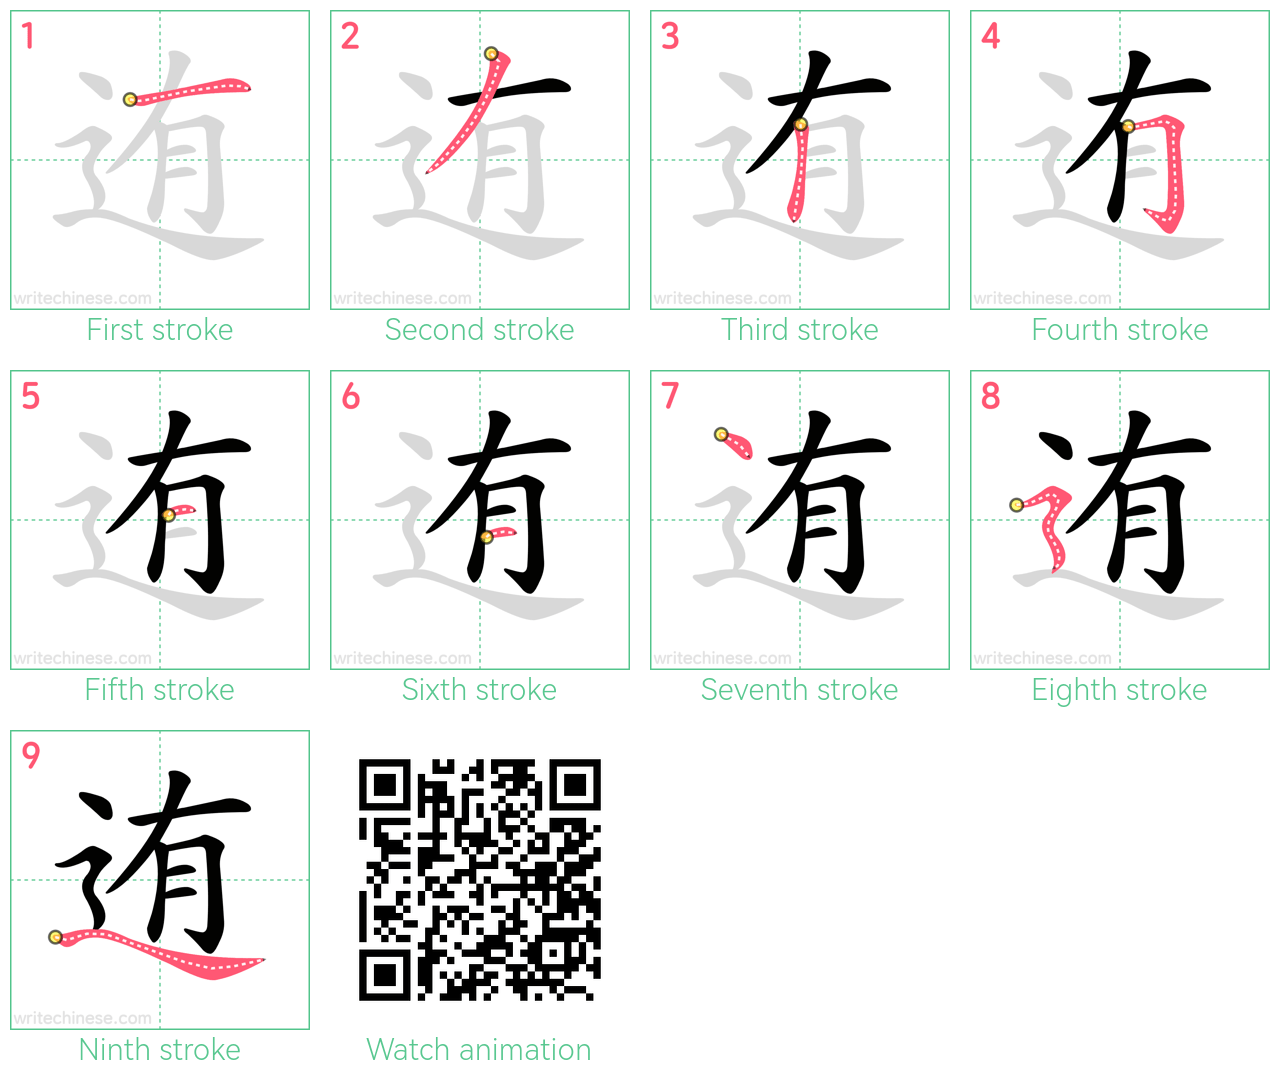 迶 step-by-step stroke order diagrams